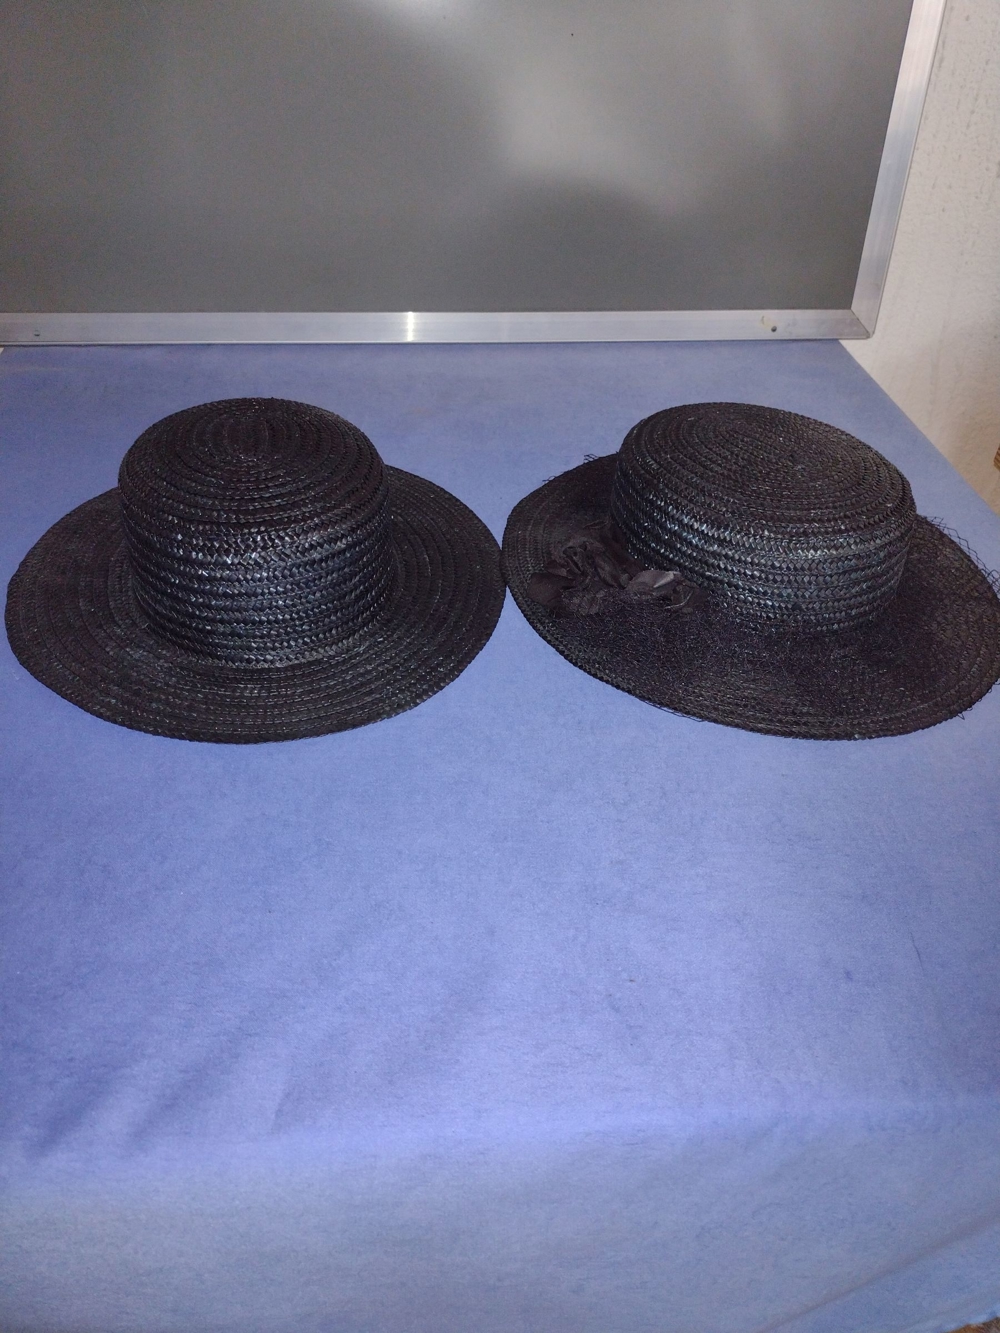 Kostüm-Hut, 2x Damen Herren, EUR 14 VHB, schwarz, gebraucht. Kunststoff